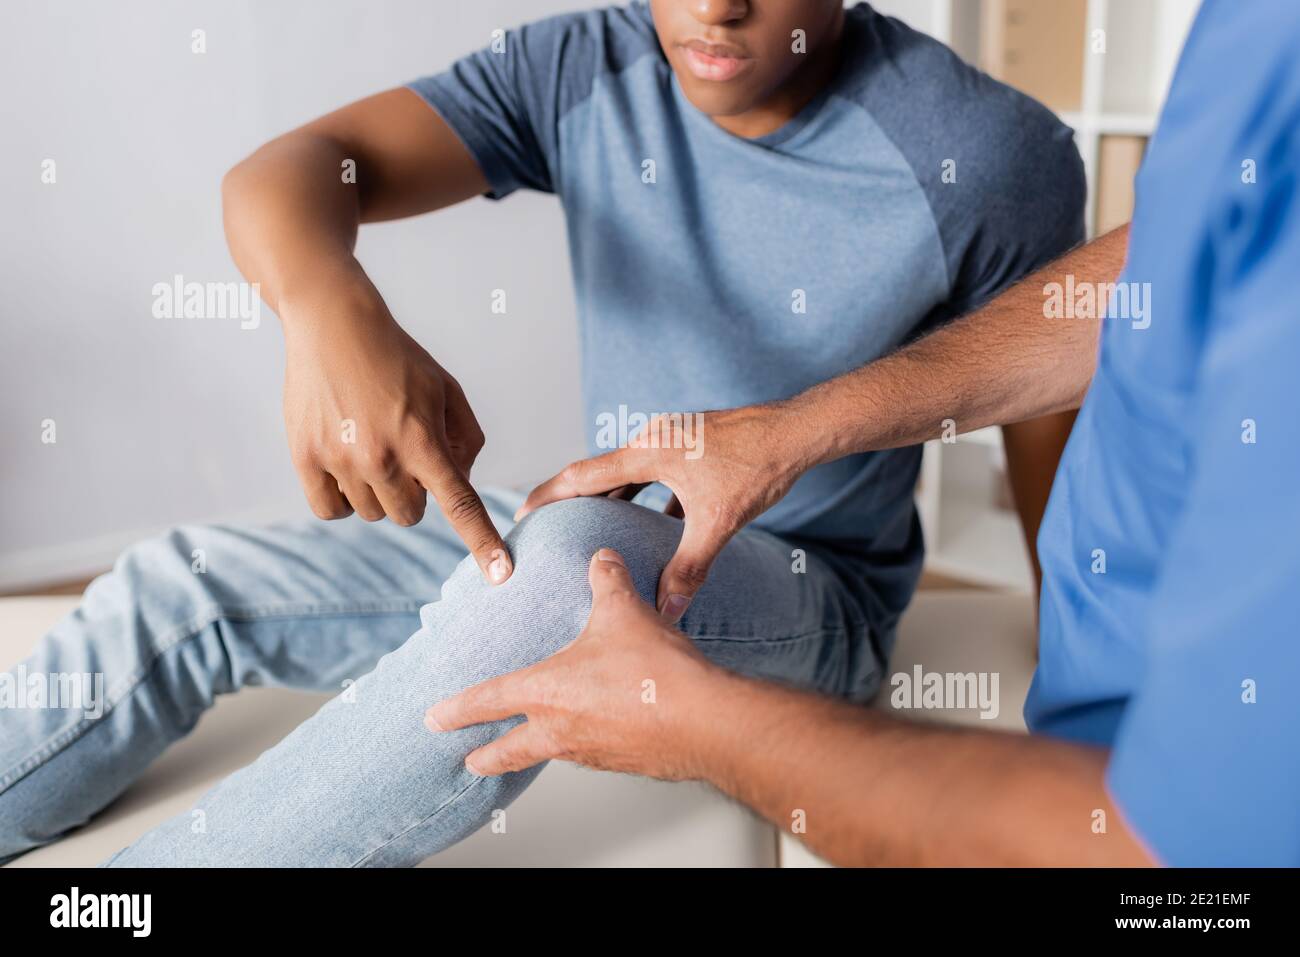 Zugeschnittene Ansicht eines afroamerikanischen Patienten, der mit dem Finger auf den Patienten zeigt Knie in der Nähe des Arztes Stockfoto